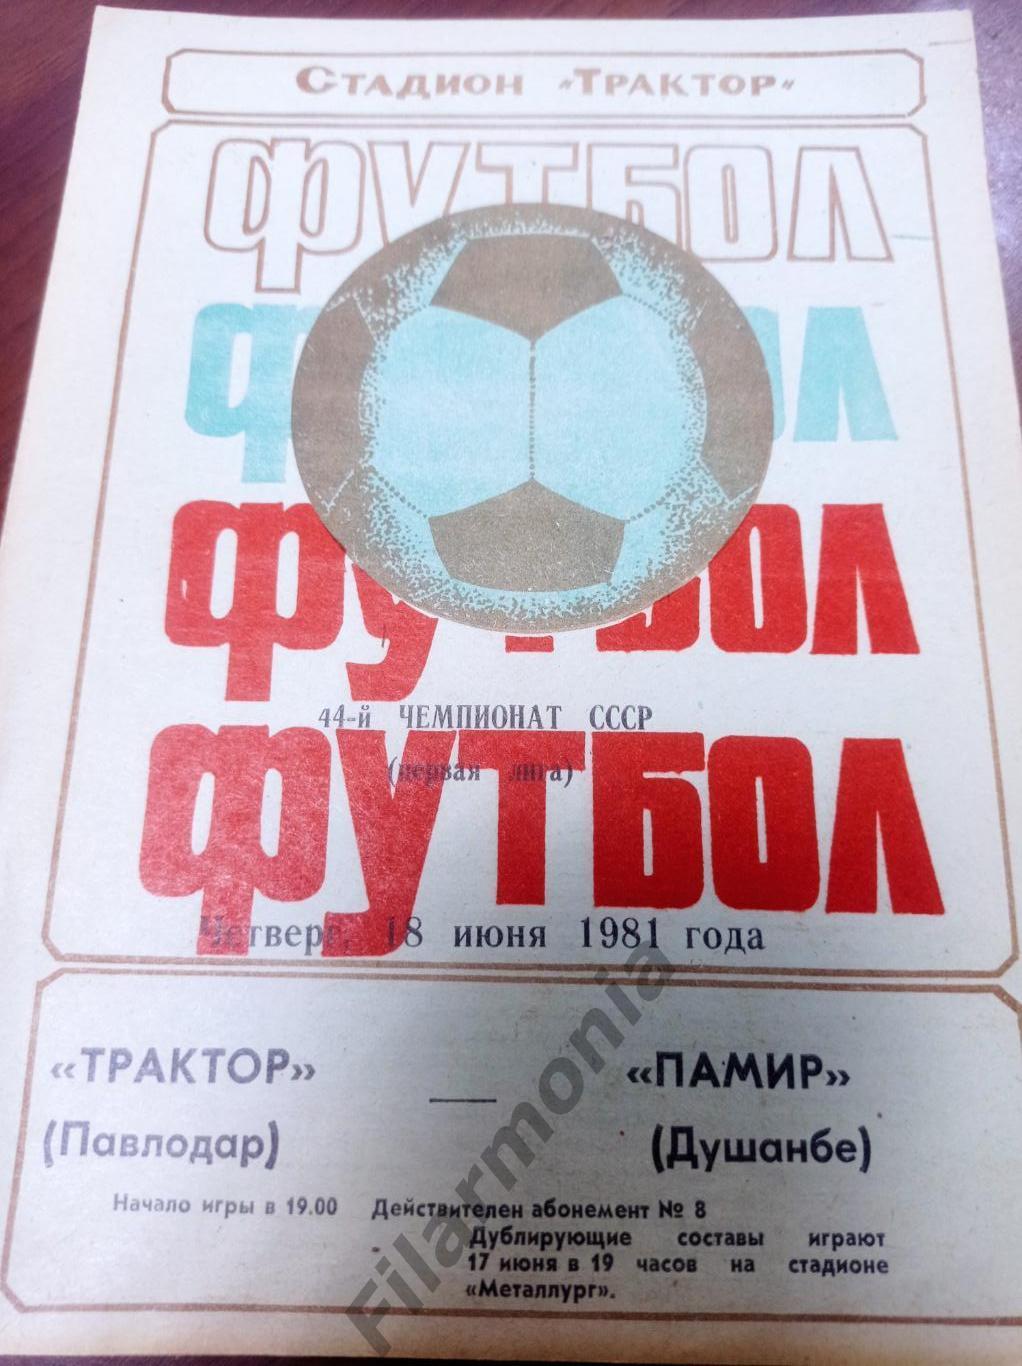 1981 Трактор Павлодар - Памир Душанбе